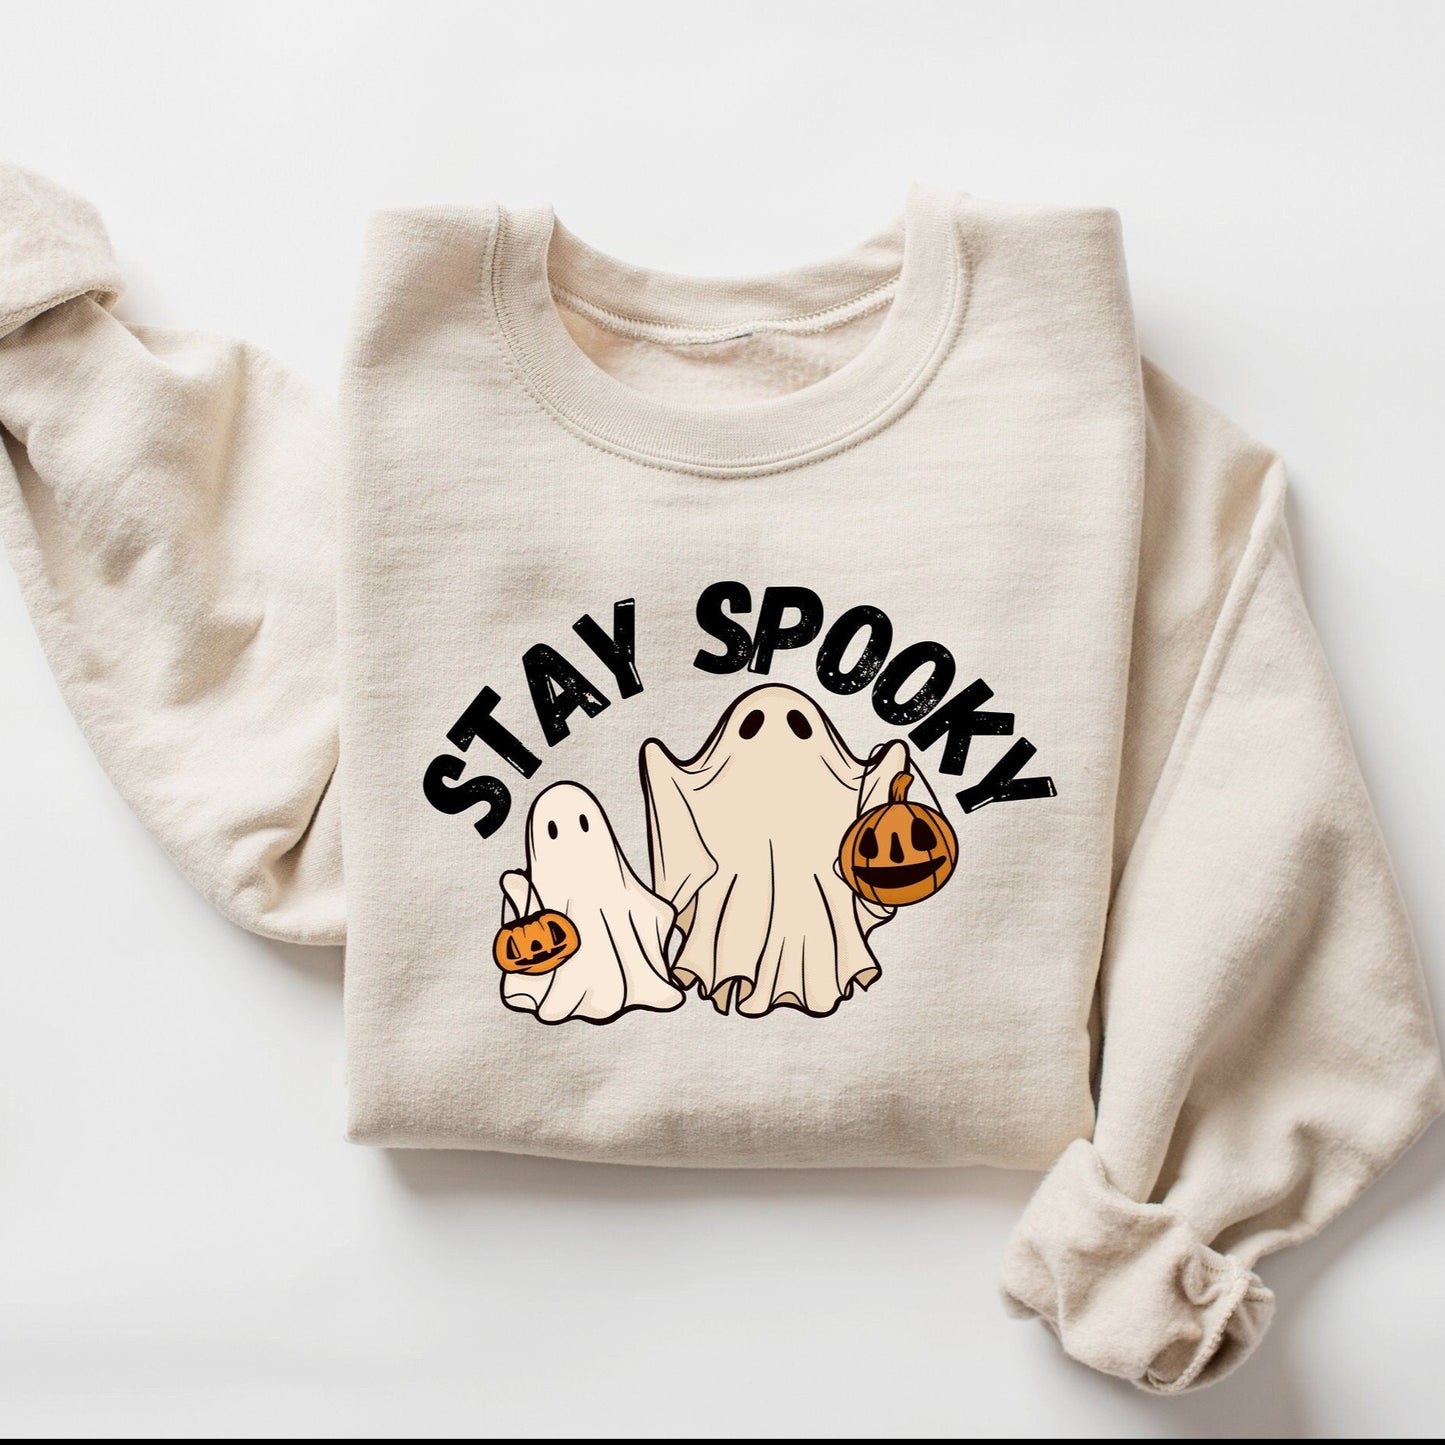 Stay Spooky Sweatshirt, Ghost Sweatshirt